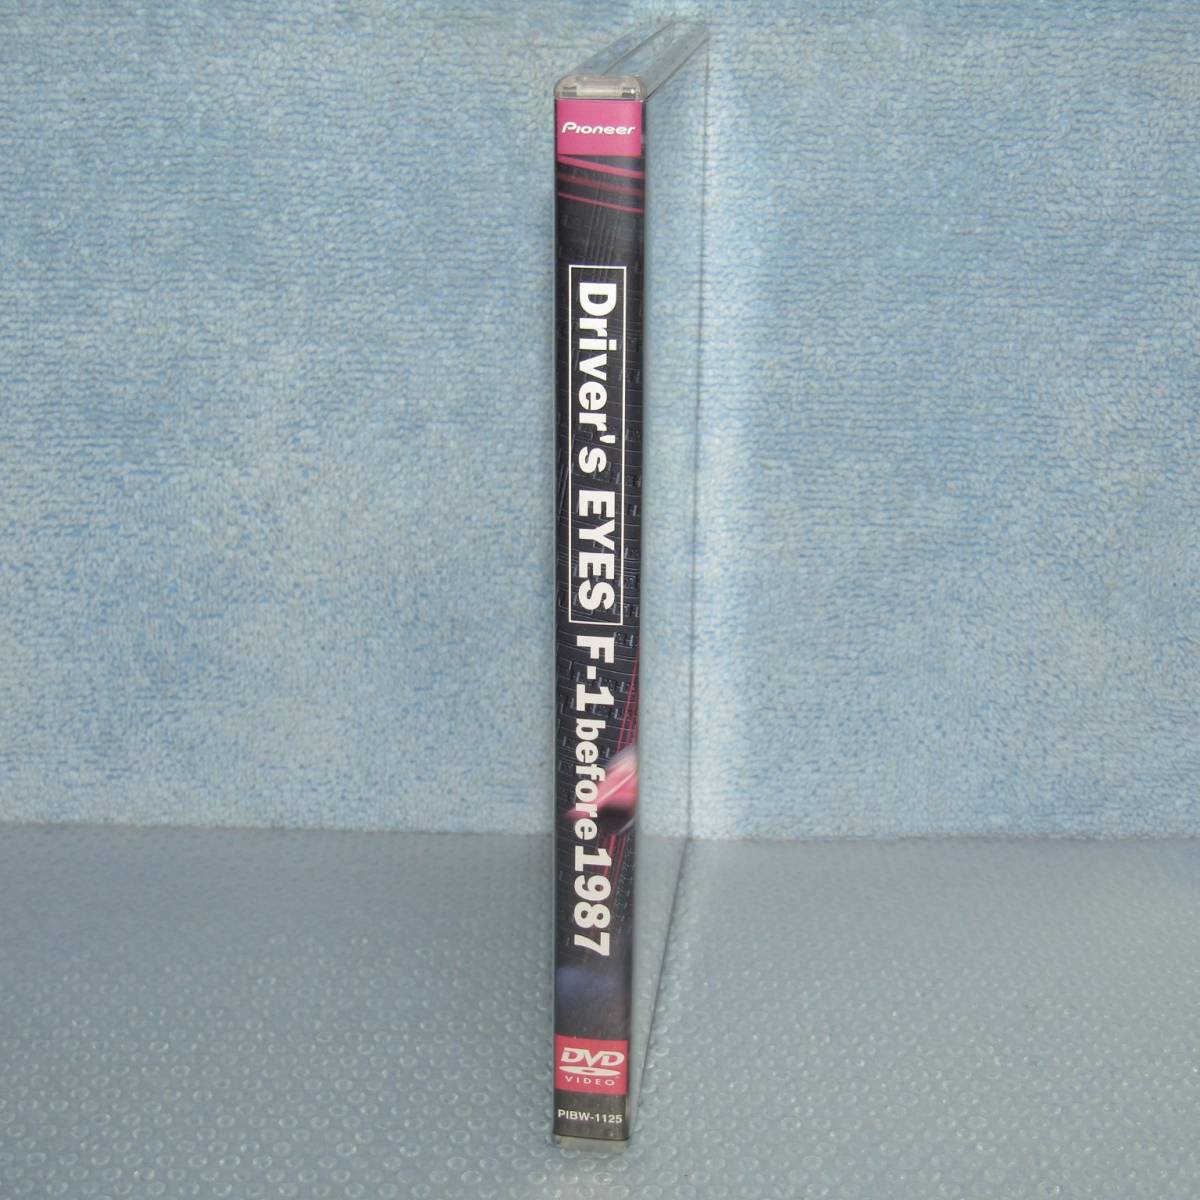 雅虎代拍-- DVD「Driver's Eyes F-1 Before 1987 ニキ・ラウダアラン・プロスト」